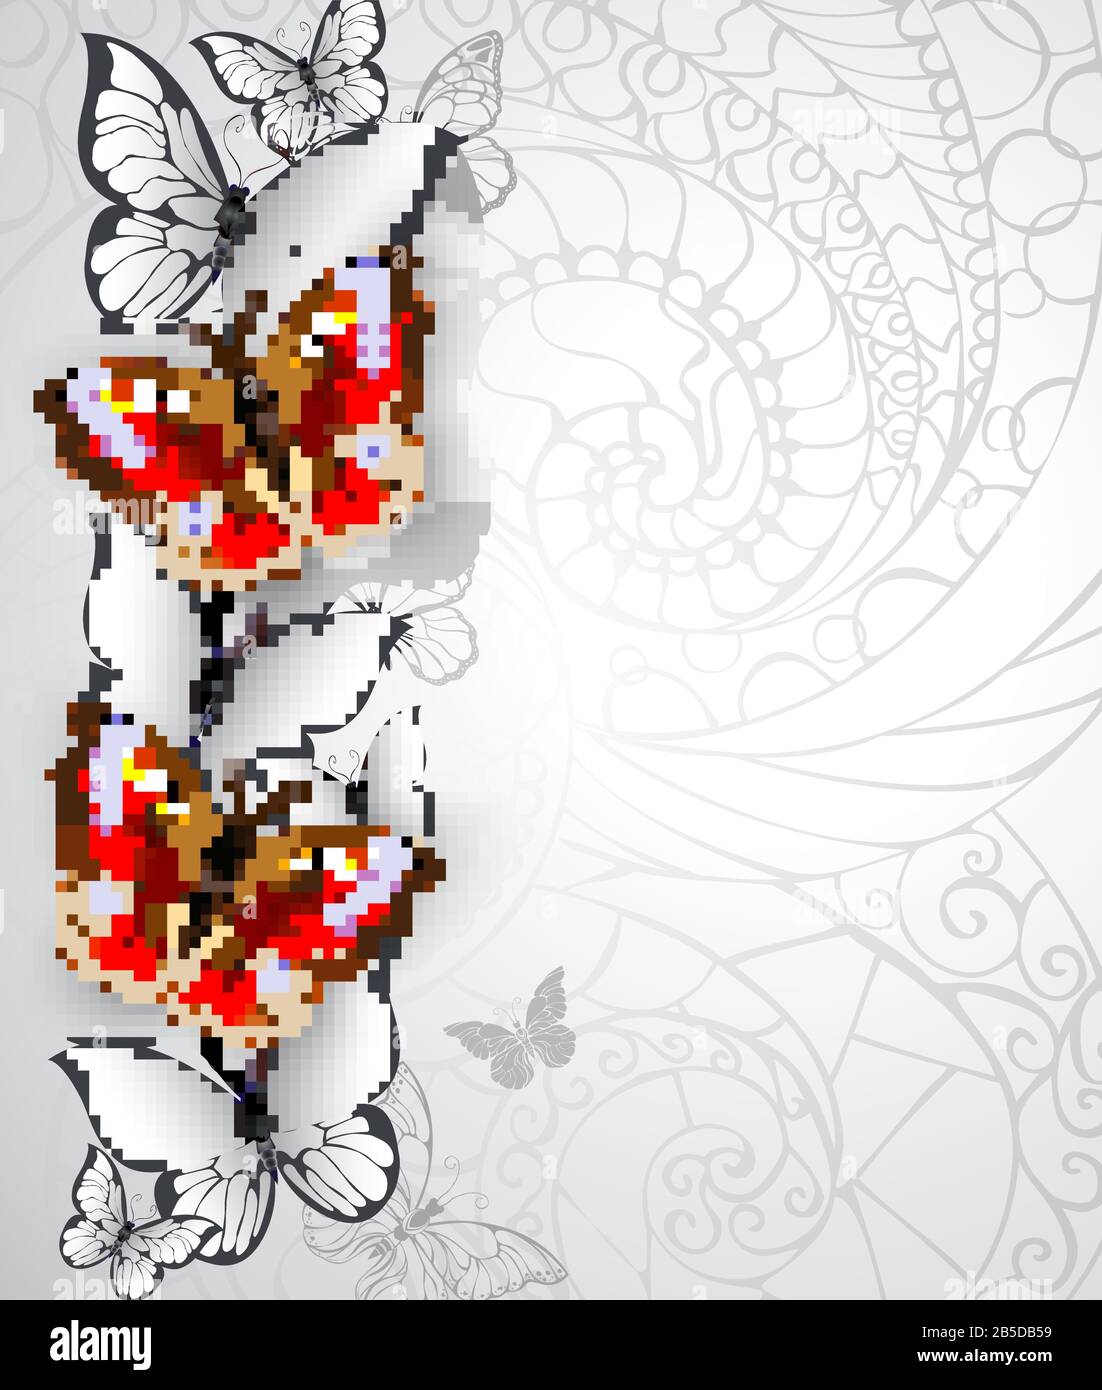 Design mit realistischen, strukturierten Schmetterlingen aus Pfauenaugen und weißen Schmetterlingen auf grauem, strukturiertem Hintergrund. Roter Schmetterling. Stock Vektor